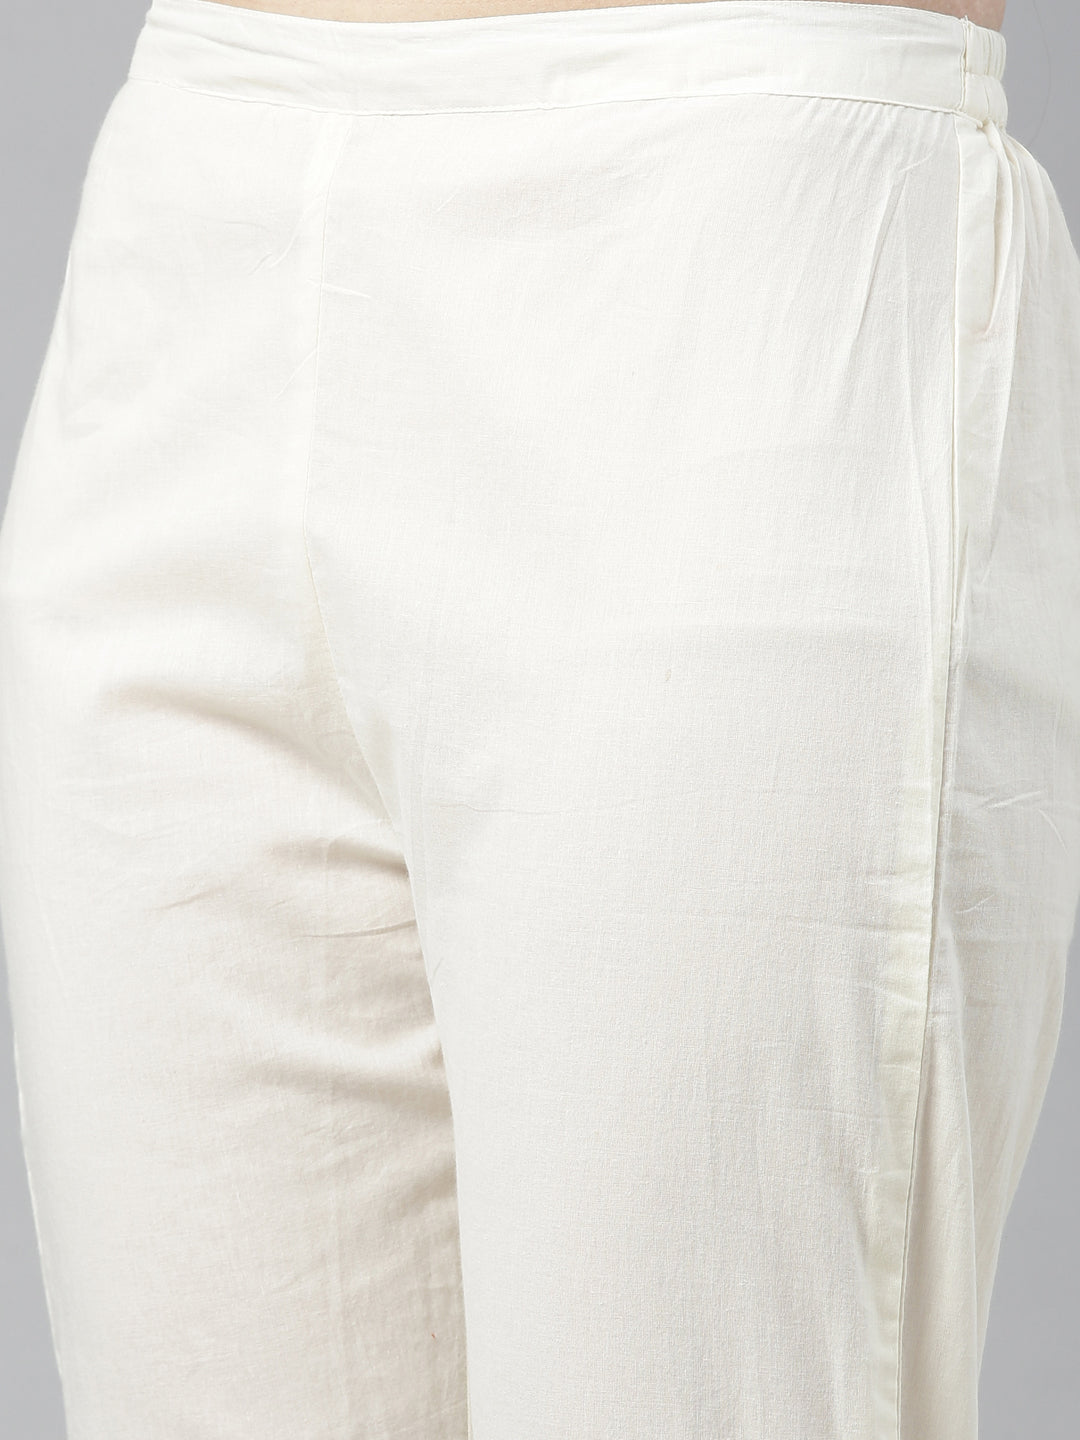 Neeru's White Printed Kurta Pant Set